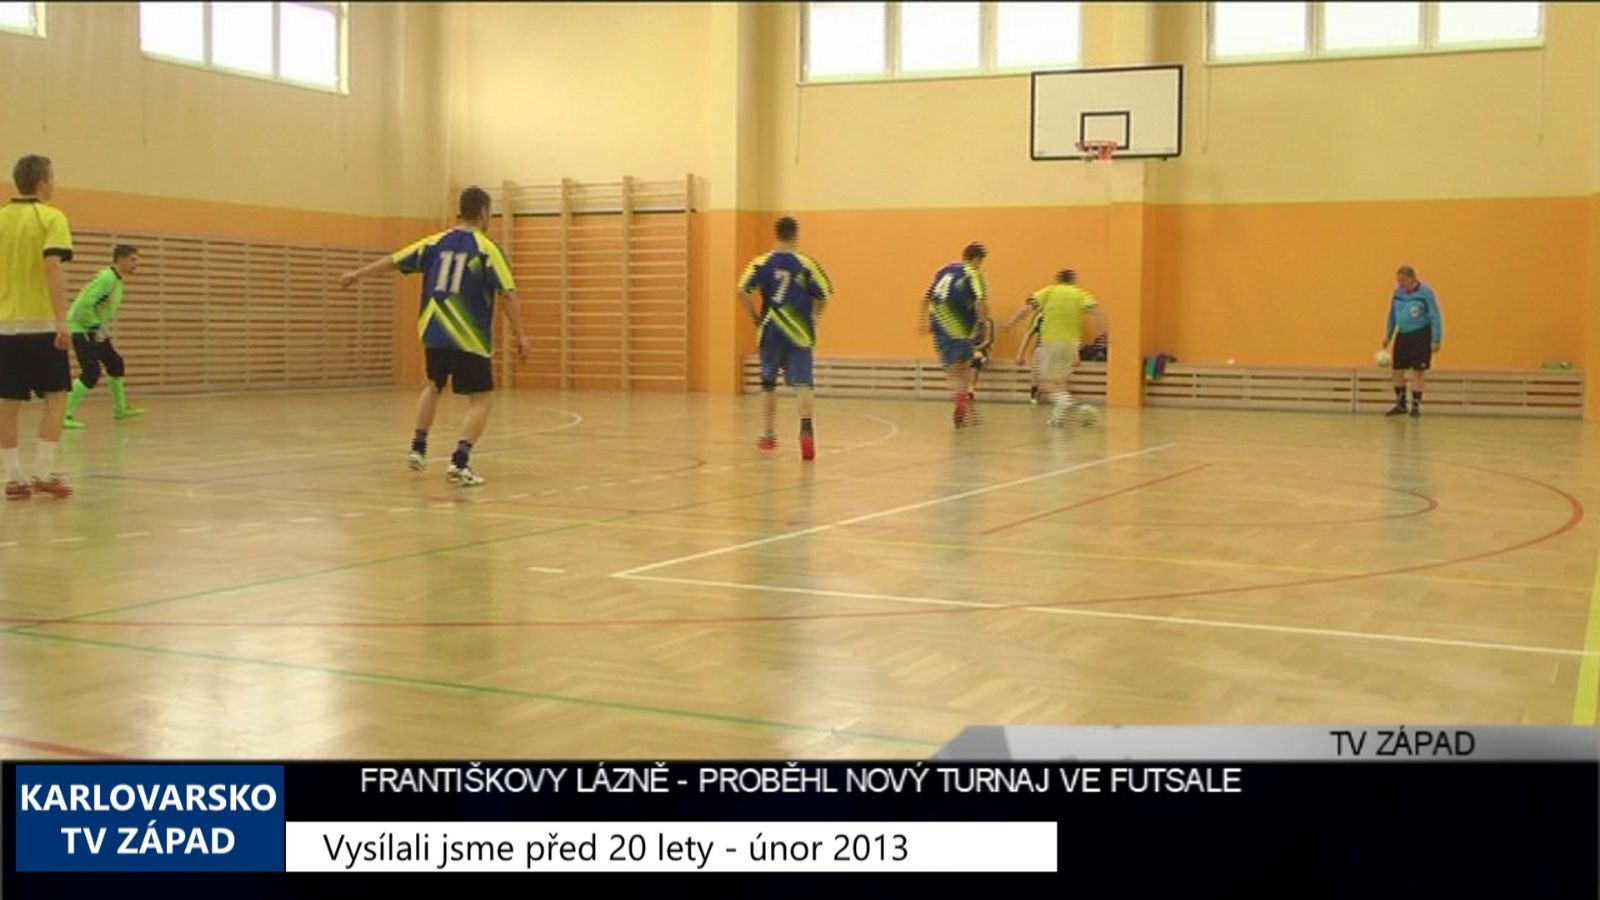 2013 – Františkovy Lázně: Proběhl nový turnaj ve futsale 4896 (TV Západ)